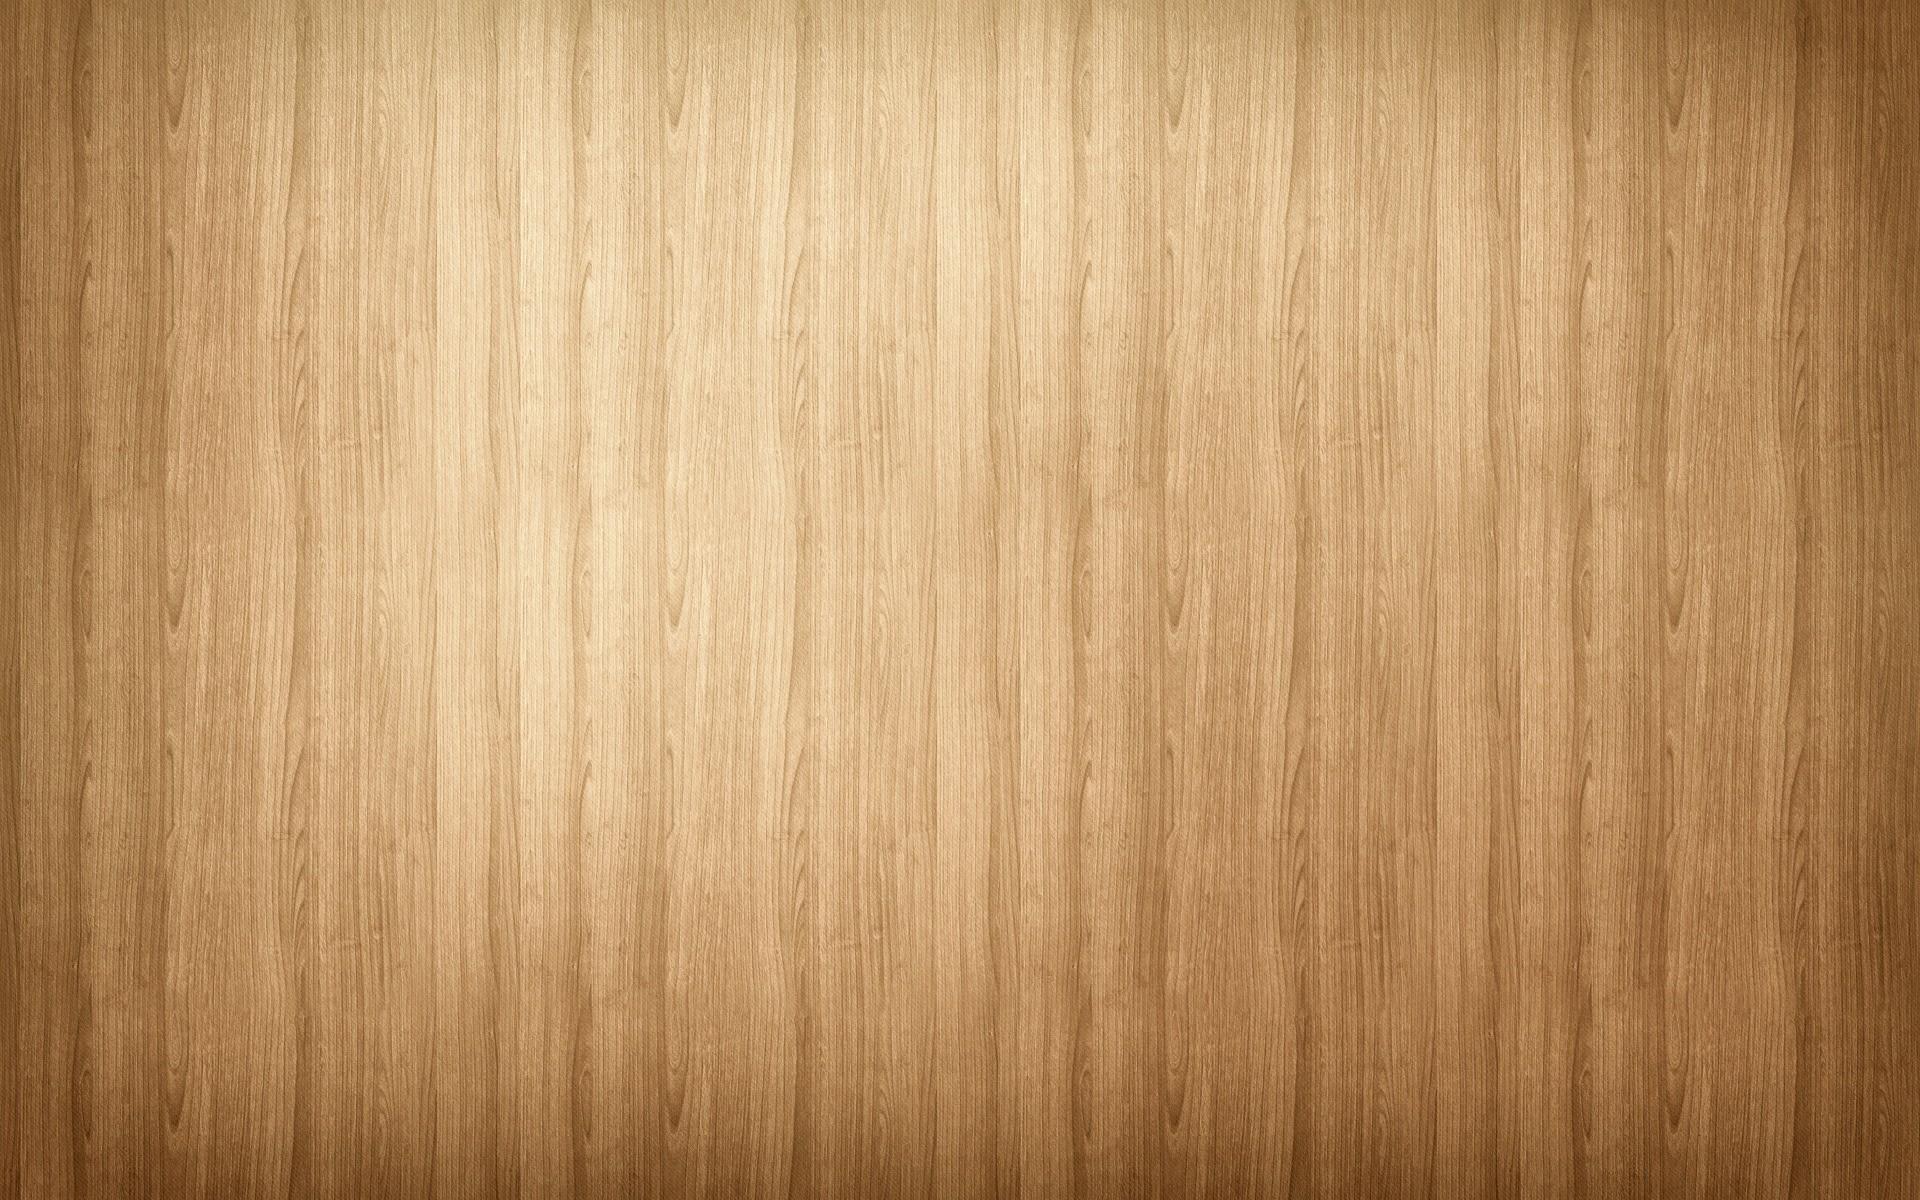 Hardwood Floor Wallpaper